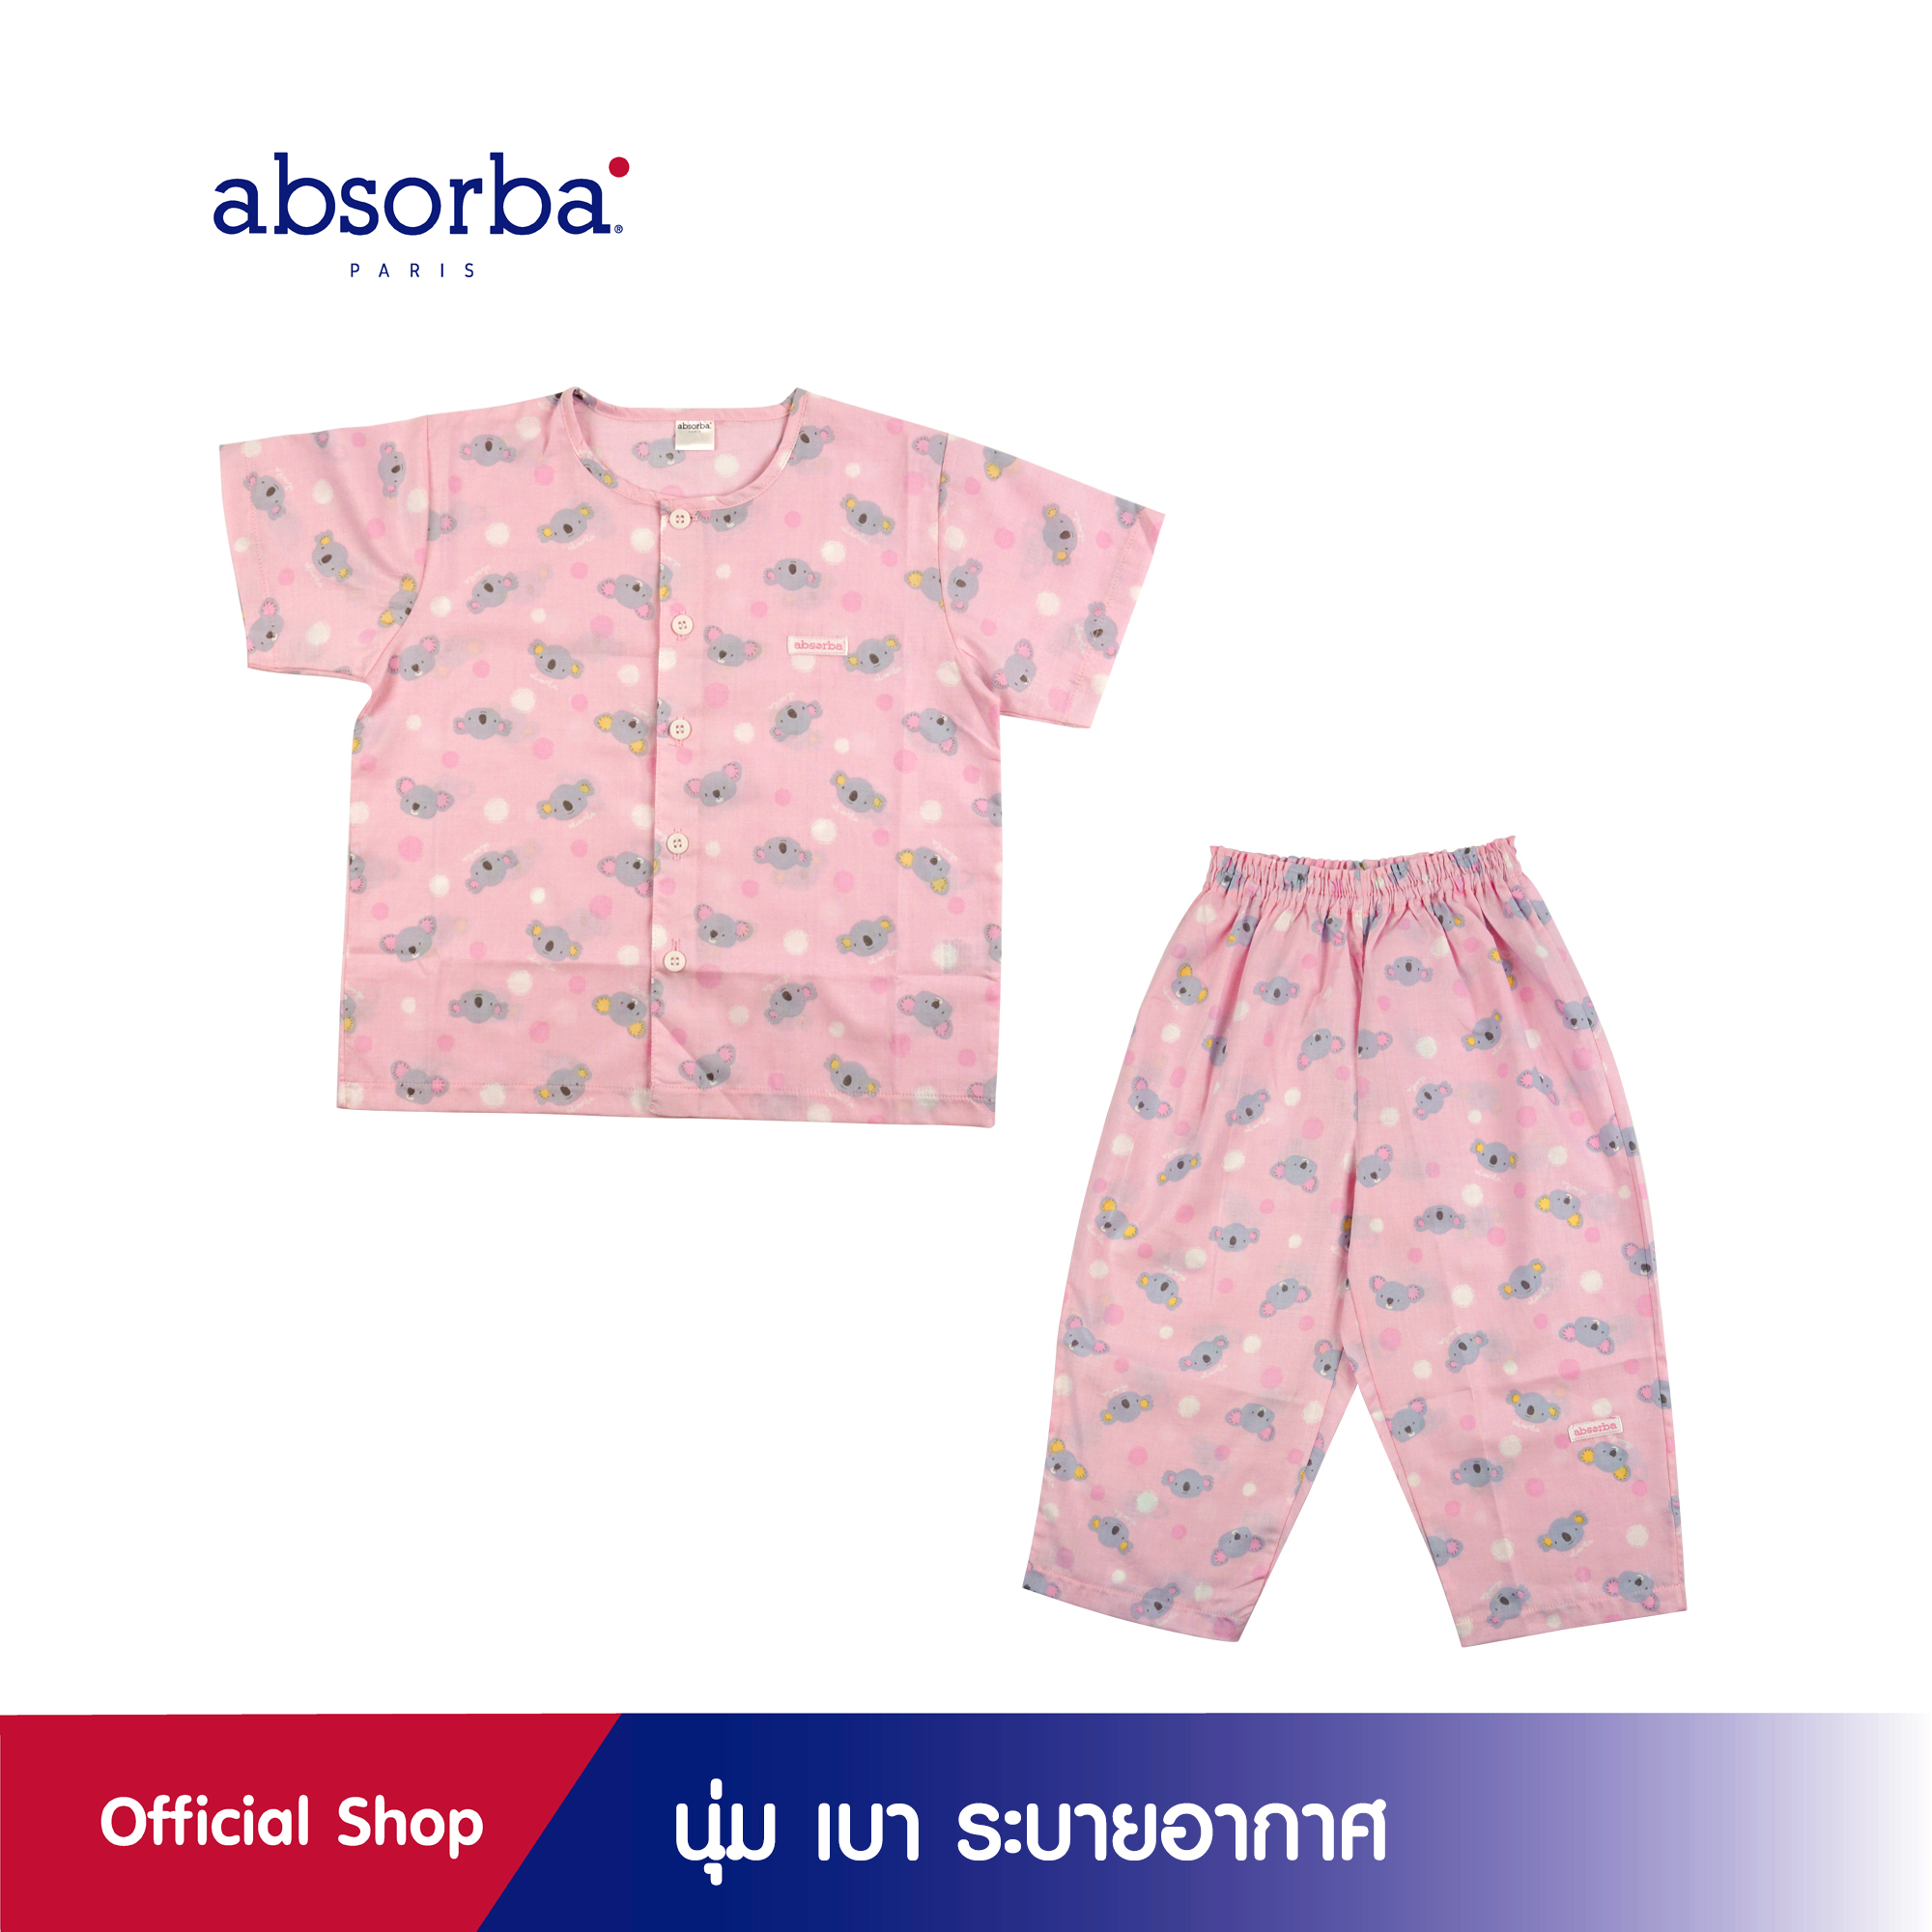 absorba(แอ็บซอร์บา)ชุดนอนเด็กแขนสั้น ขายาว นุ่ม เบา ระบายอากาศ สำหรับเด็กอายุ 1-5 ปี สีชมพู แพ็ค 1 ชุด - R3Y7002PI